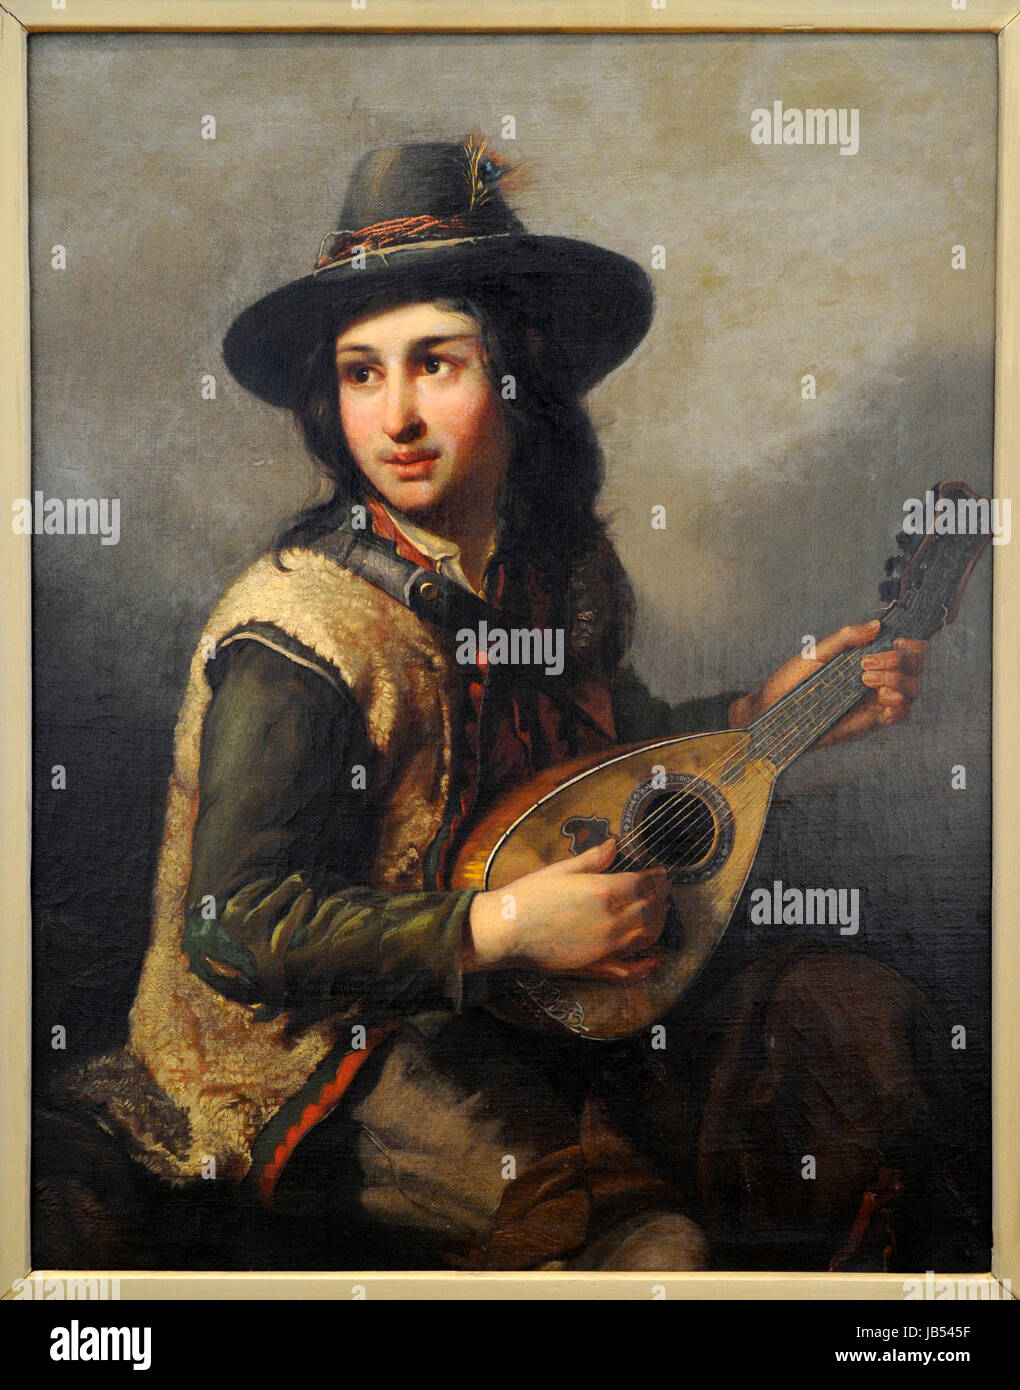 Jan Zienkiewicz (1821-1888). Italienische junge mit der Mandoline, 1861. Vilnius-Bildergalerie. Litauen. Stockfoto